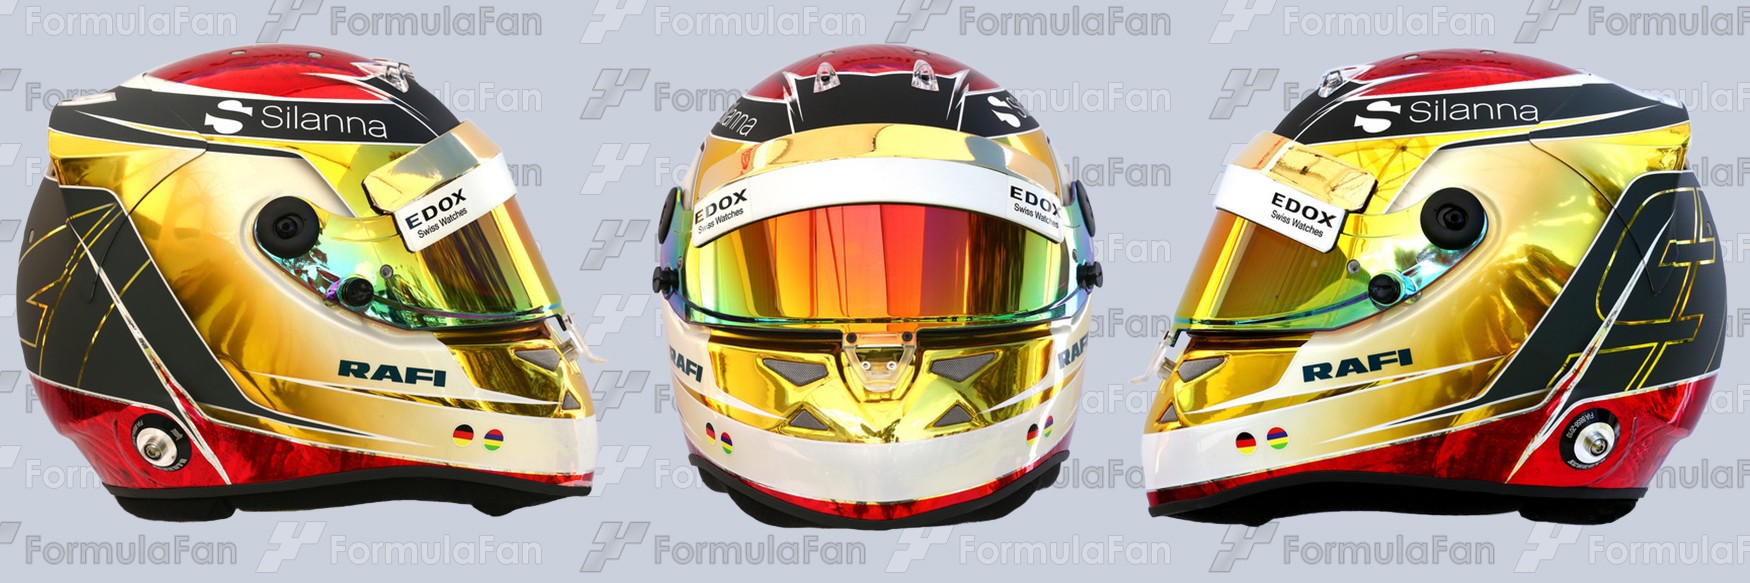 Шлем Паскаля Верляйна на сезон 2017 года | 2017 helmet of Pascal Wehrlein